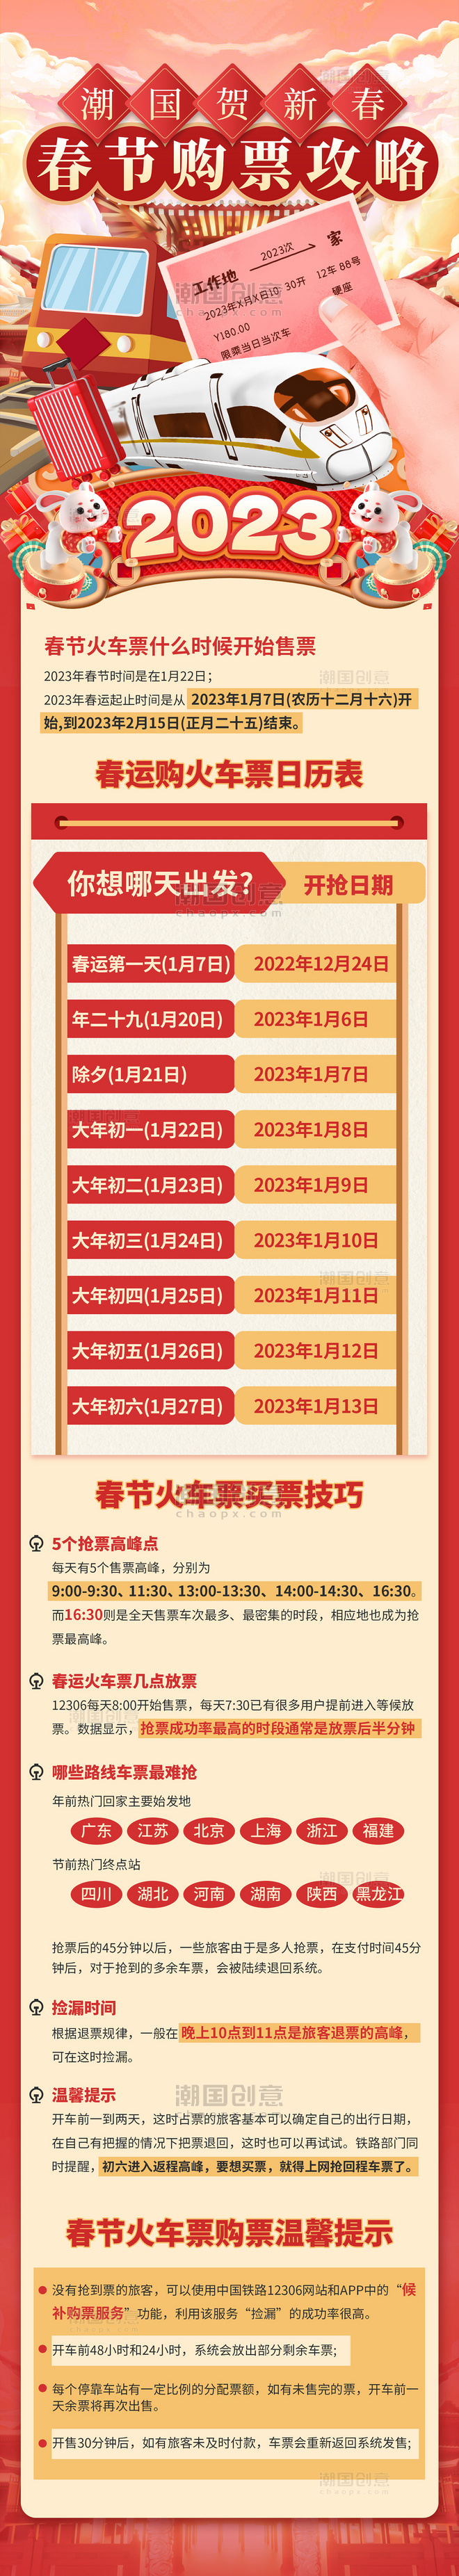 春节抢票攻略购票日历火车票预售时间红色喜庆H5长图